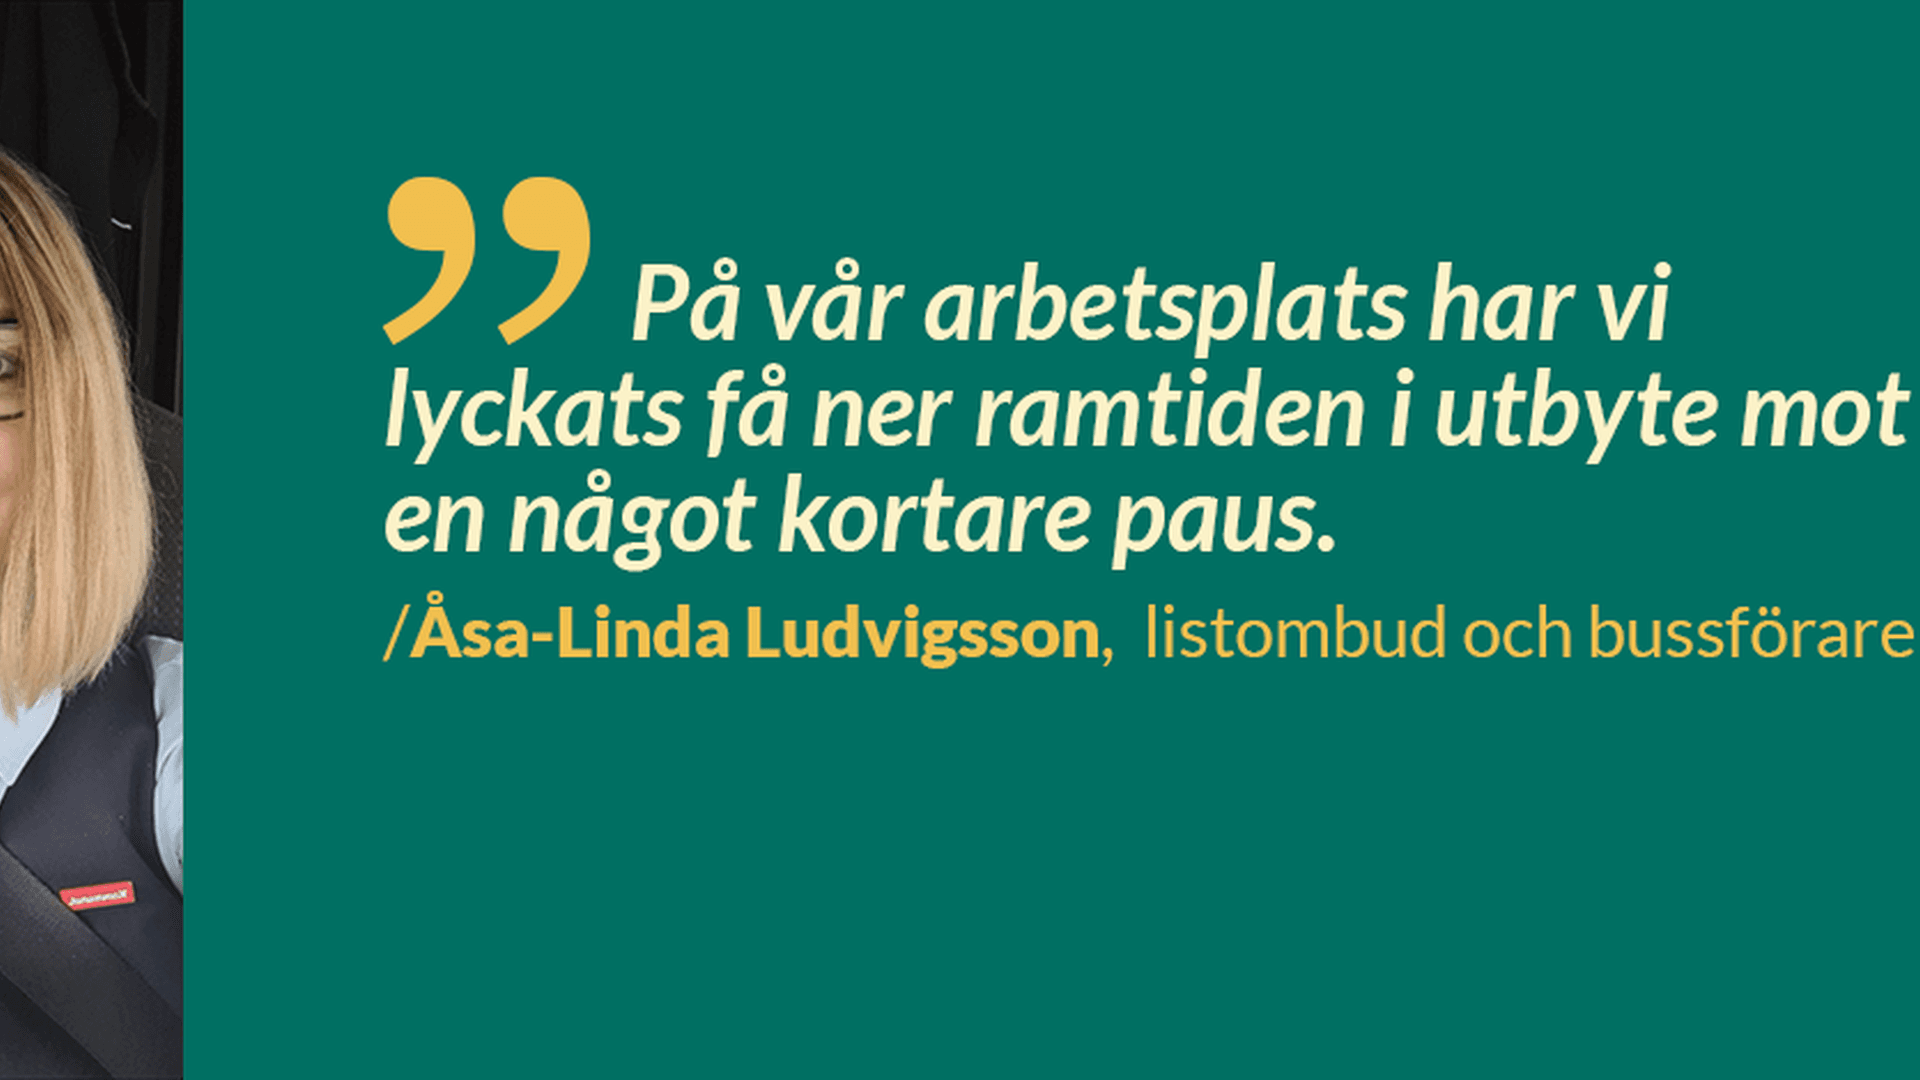 Åsa-Linda Ludvigsson, bussförare och listombud, berättar om en facklig framgång